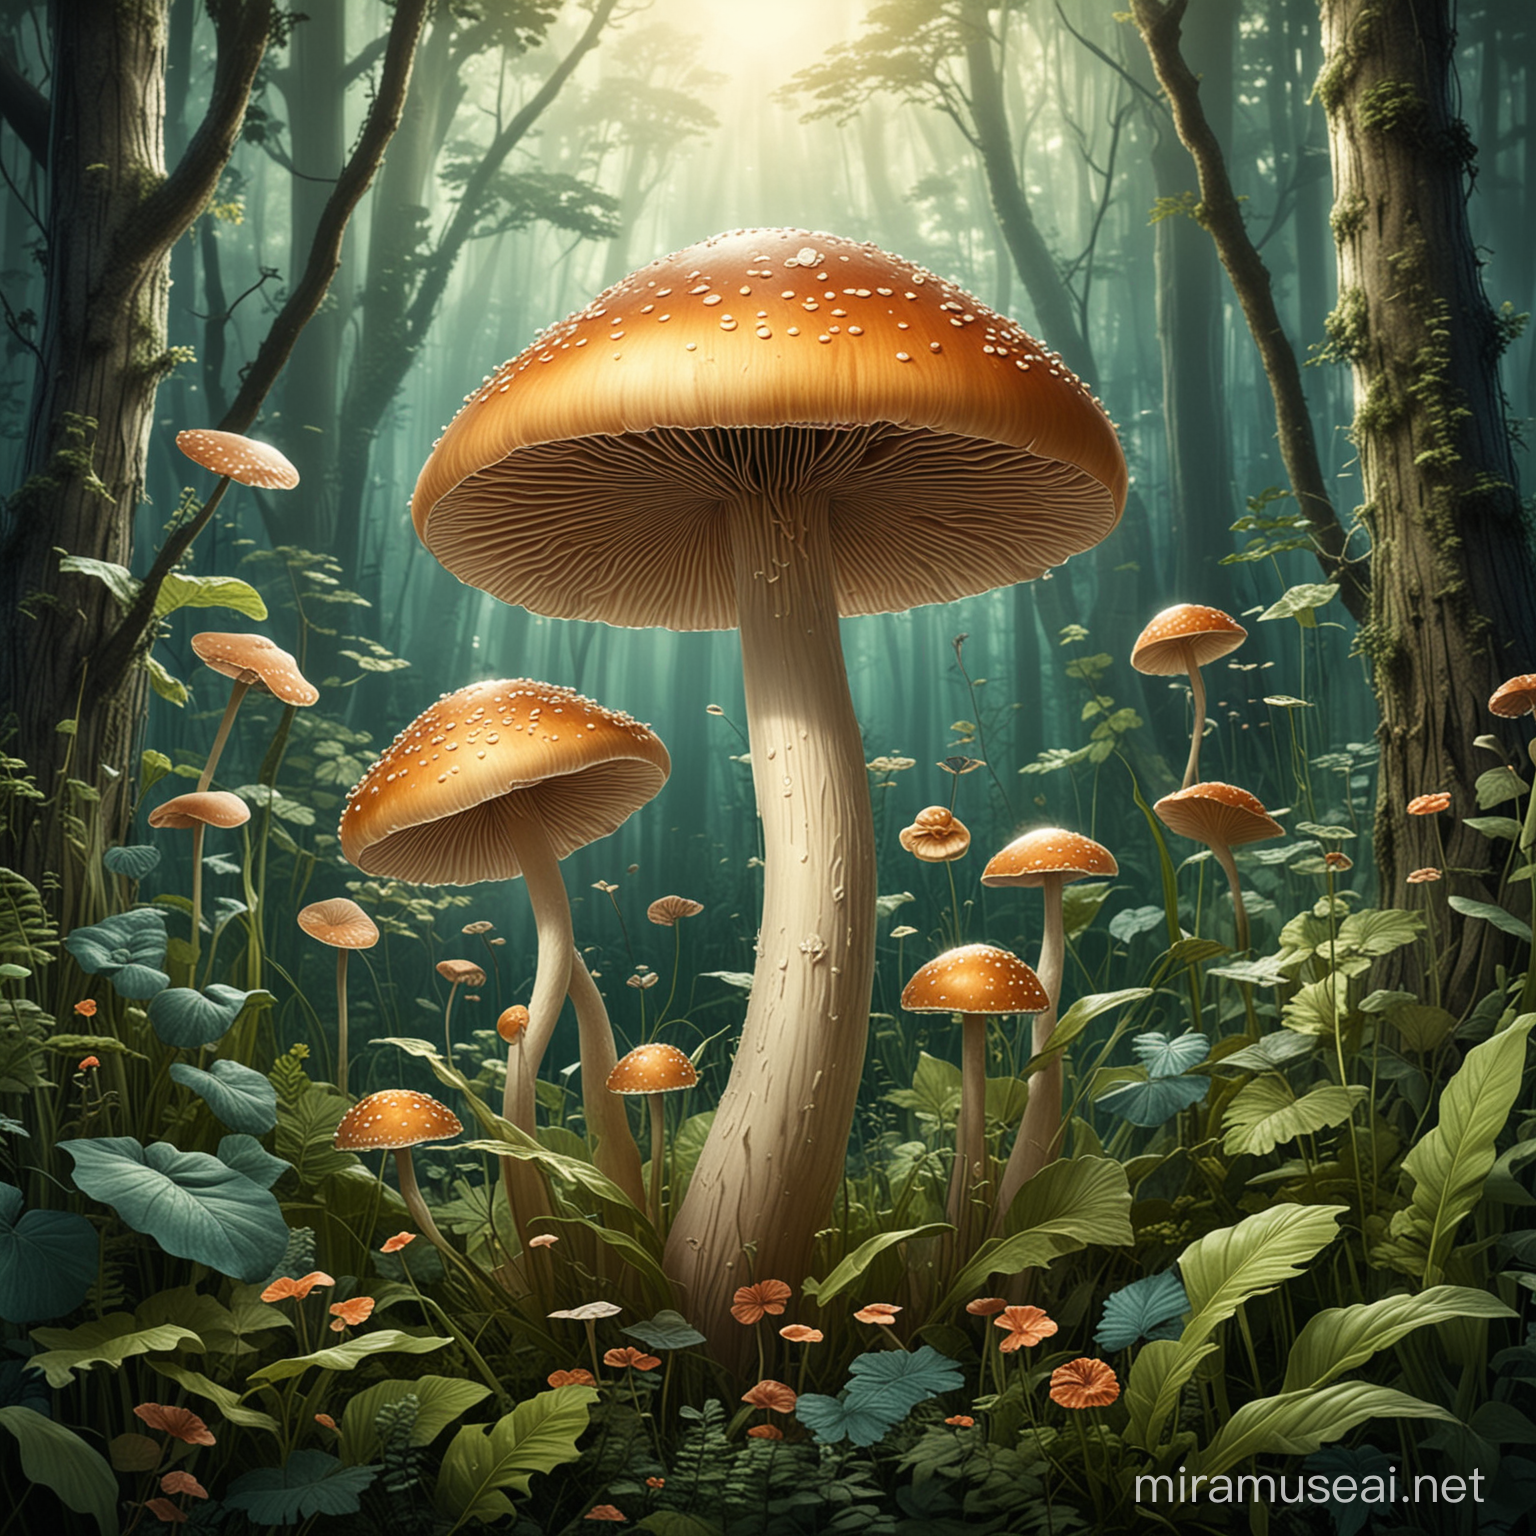 je veux une illustration de champignon magique très harmonieux fin et élégant dans un décor de végétaux au style Art Déco